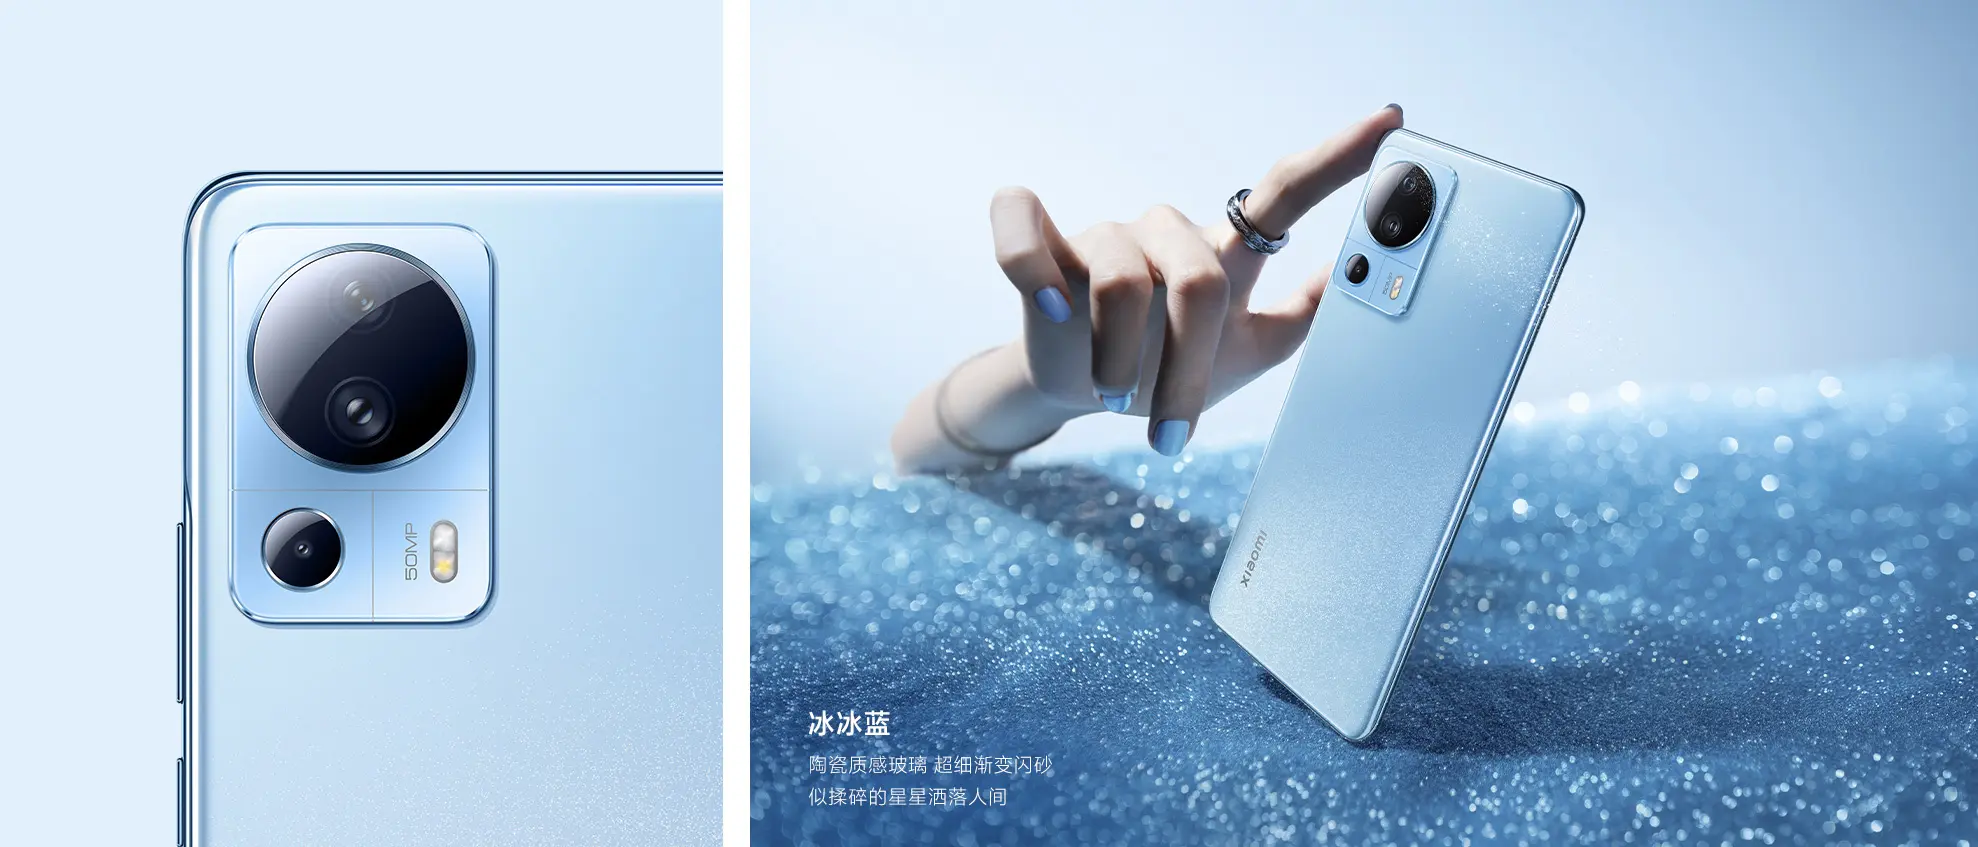 Xiaomi lanza el CIVI 2, el primer smartphone Android con Dynamic Island